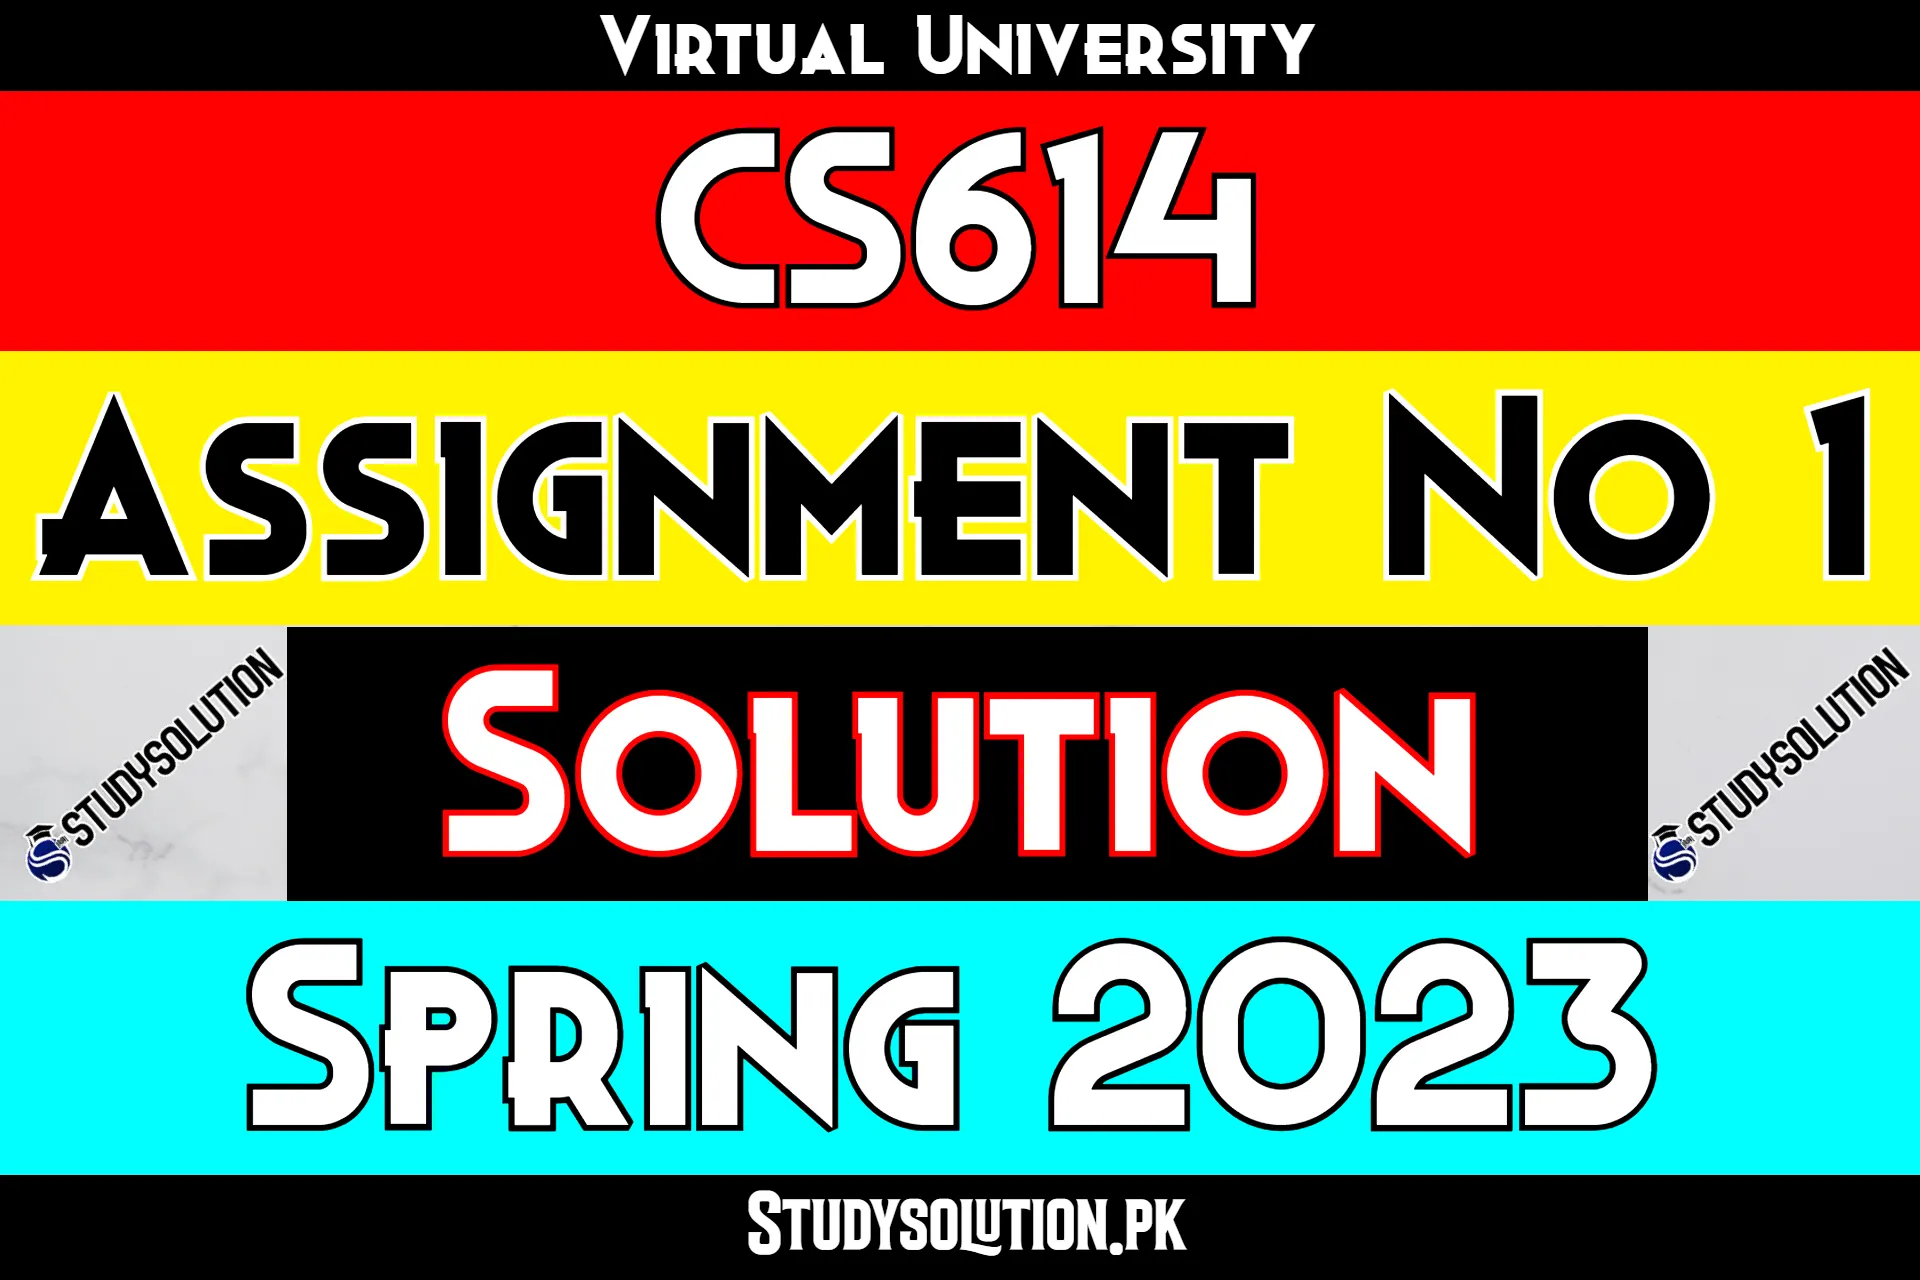 CS614 Assignment No 1 Solution Spring 2023